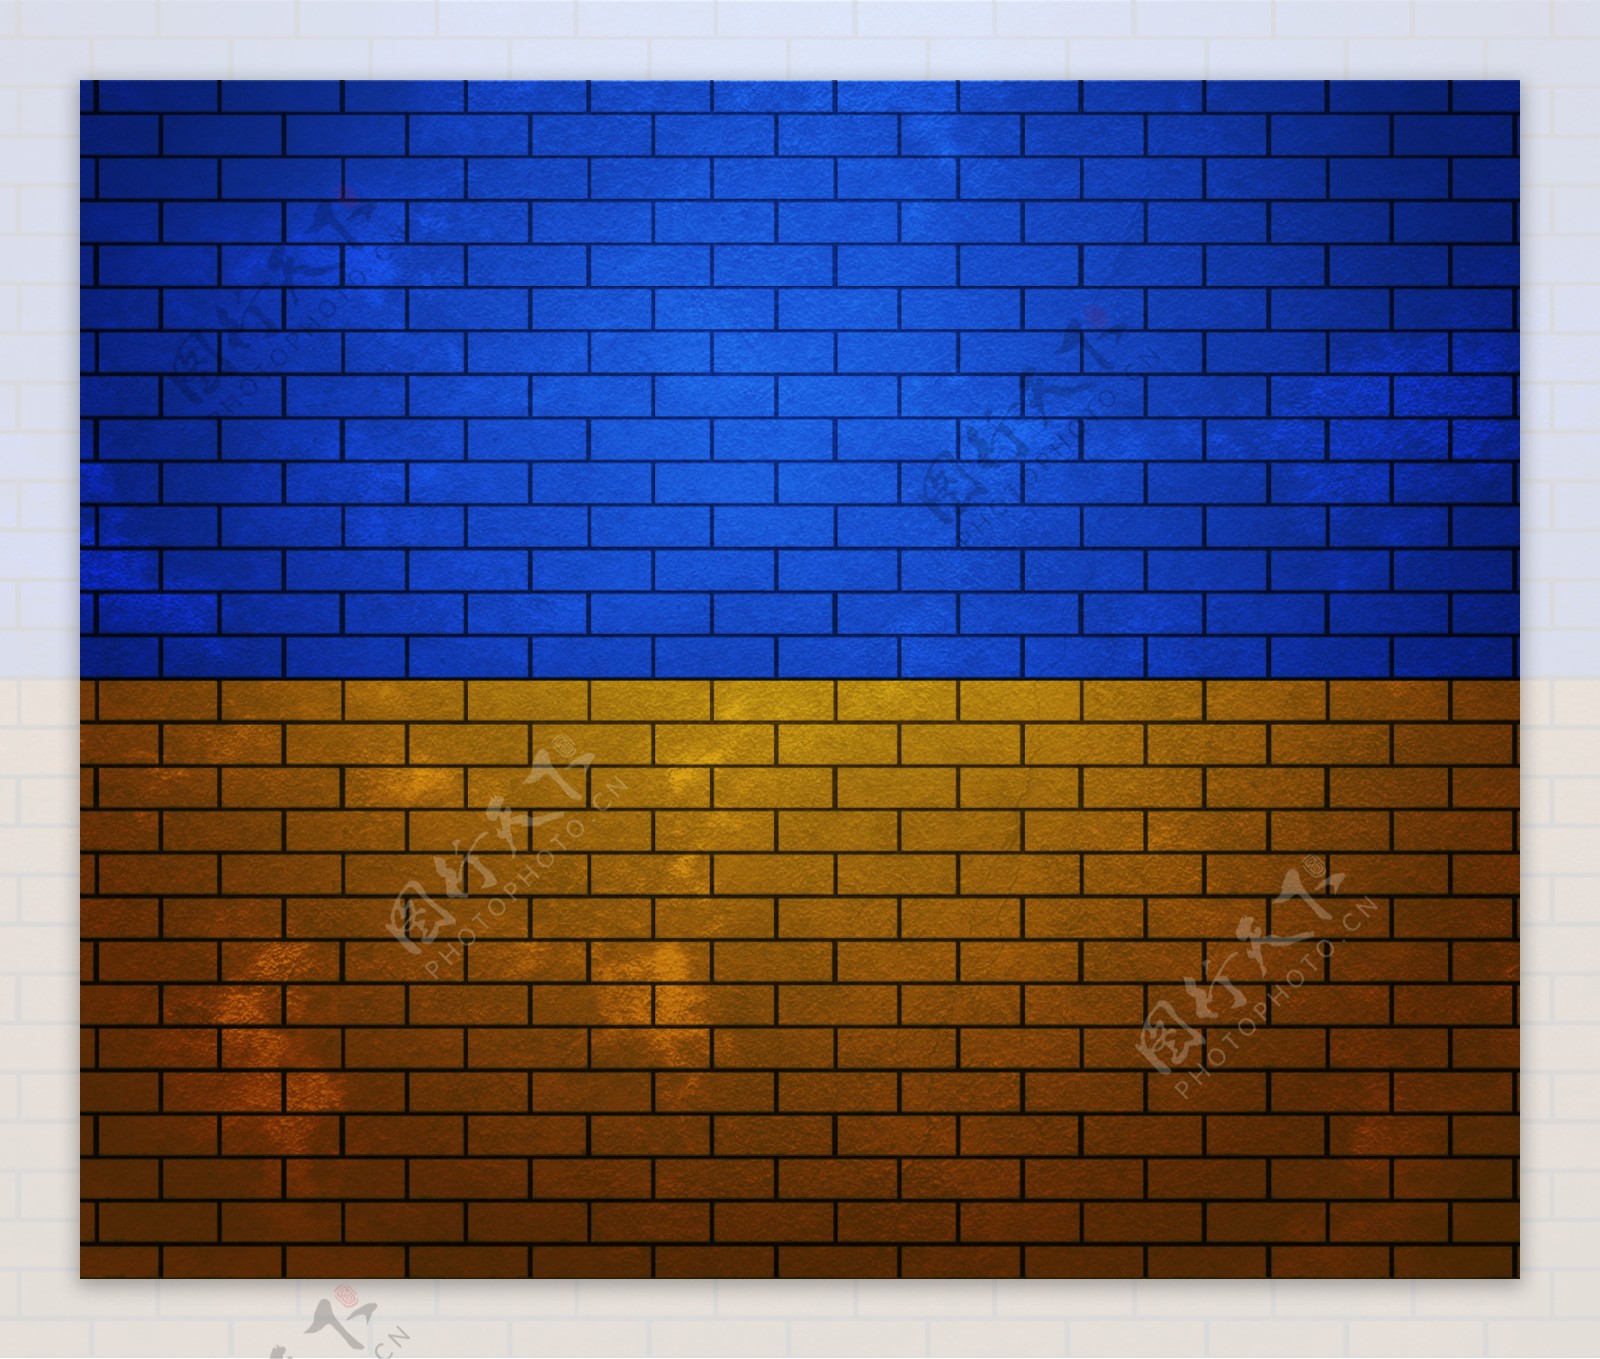 乌克兰在砖墙上的旗帜